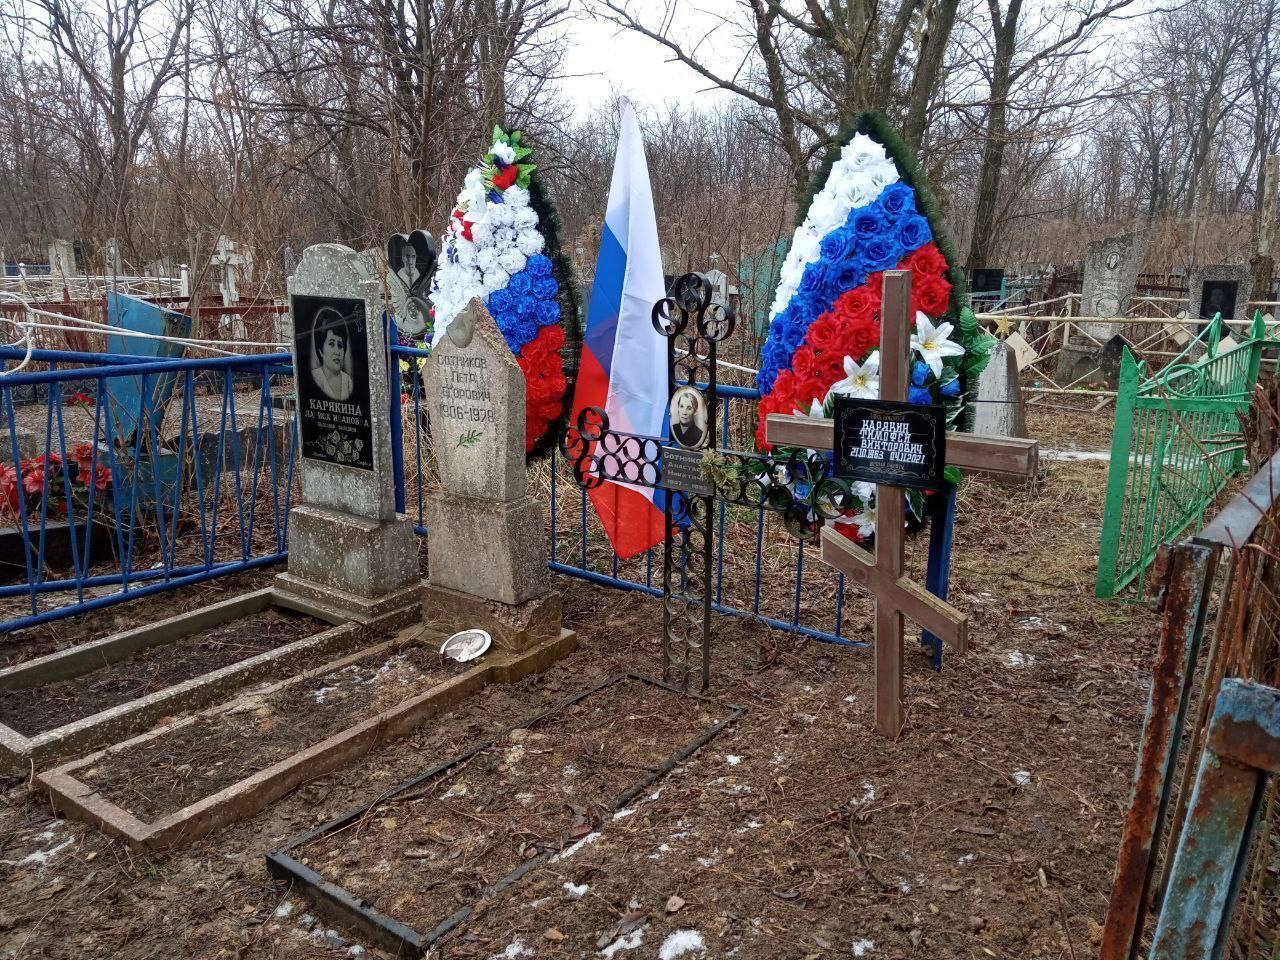 В Кадиевке предатели осквернили могилу родных украинского воина. Фото